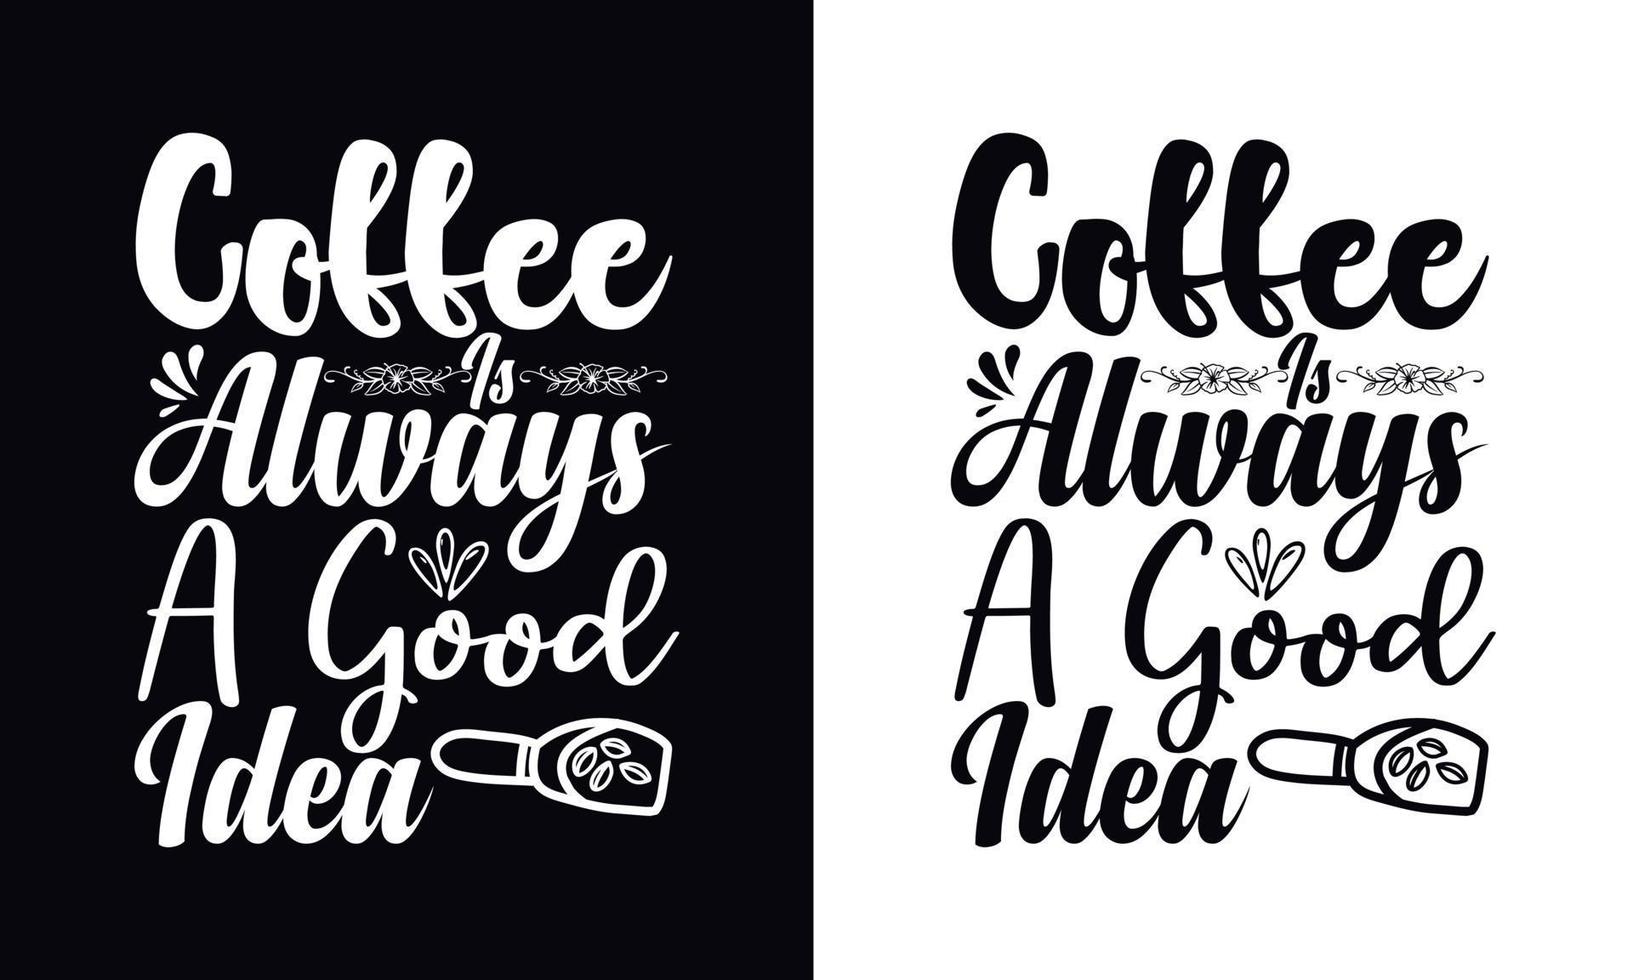 kaffe är alltid en Bra aning. typografi vektor kaffe t-shirt design mall